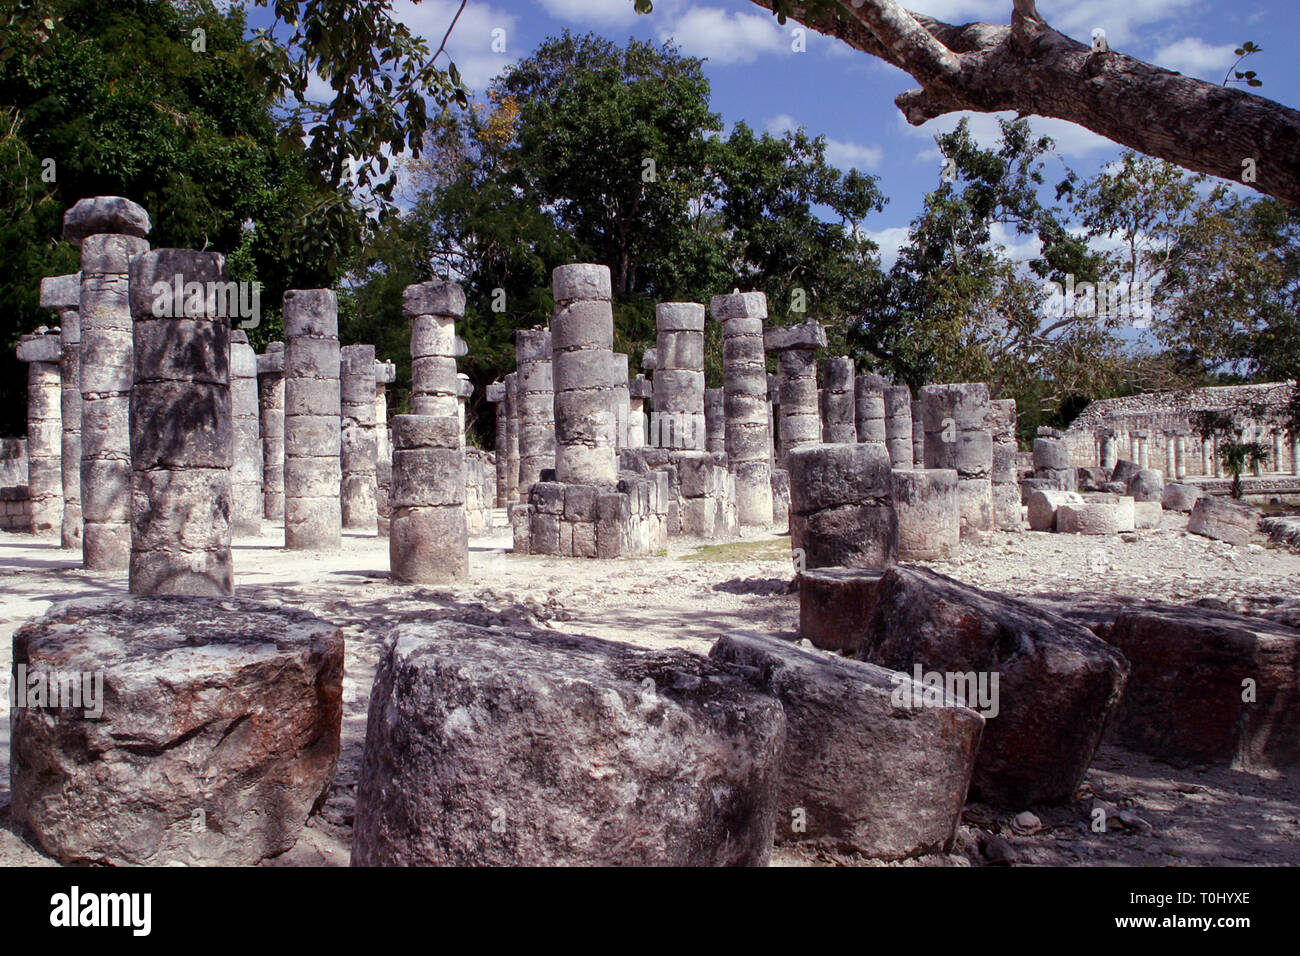 Zona arqueologica de Chichen Itza Zona arqueológica    Chichén ItzáChichén Itzá maya: (Chichén) Boca del pozo;   de los (Itzá) brujos de agua.   Es uno de los principales sitios arqueológicos de la   península de Yucatán, en México, ubicado en el municipio de Tinum.  *Photo:©Francisco* Morales/DAMMPHOTO.COM/NORTEPHOTO Stock Photo